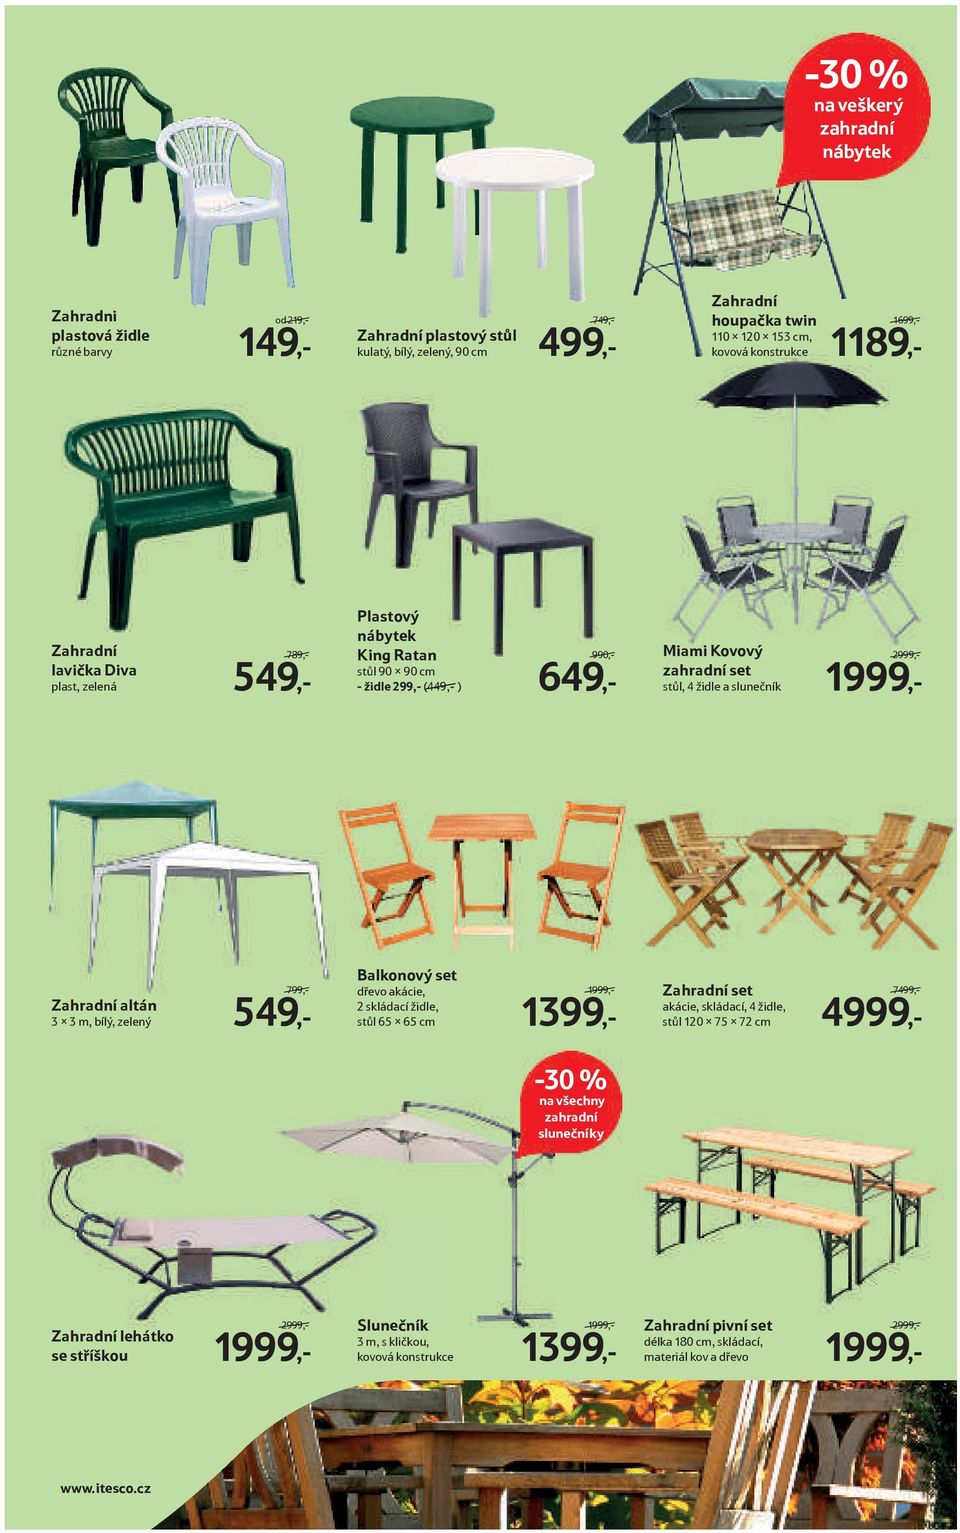 slunečník 2999,- 1999,- Zahradní altán 3 x 3 m, bílý, zelený 799,- 549,- Balkonový set dřevo akácie, 2 skládací židle, stůl 65 x 65 cm 1999,- 1399,- Zahradní set akácie, skládací, 4 židle, stůl 120 x